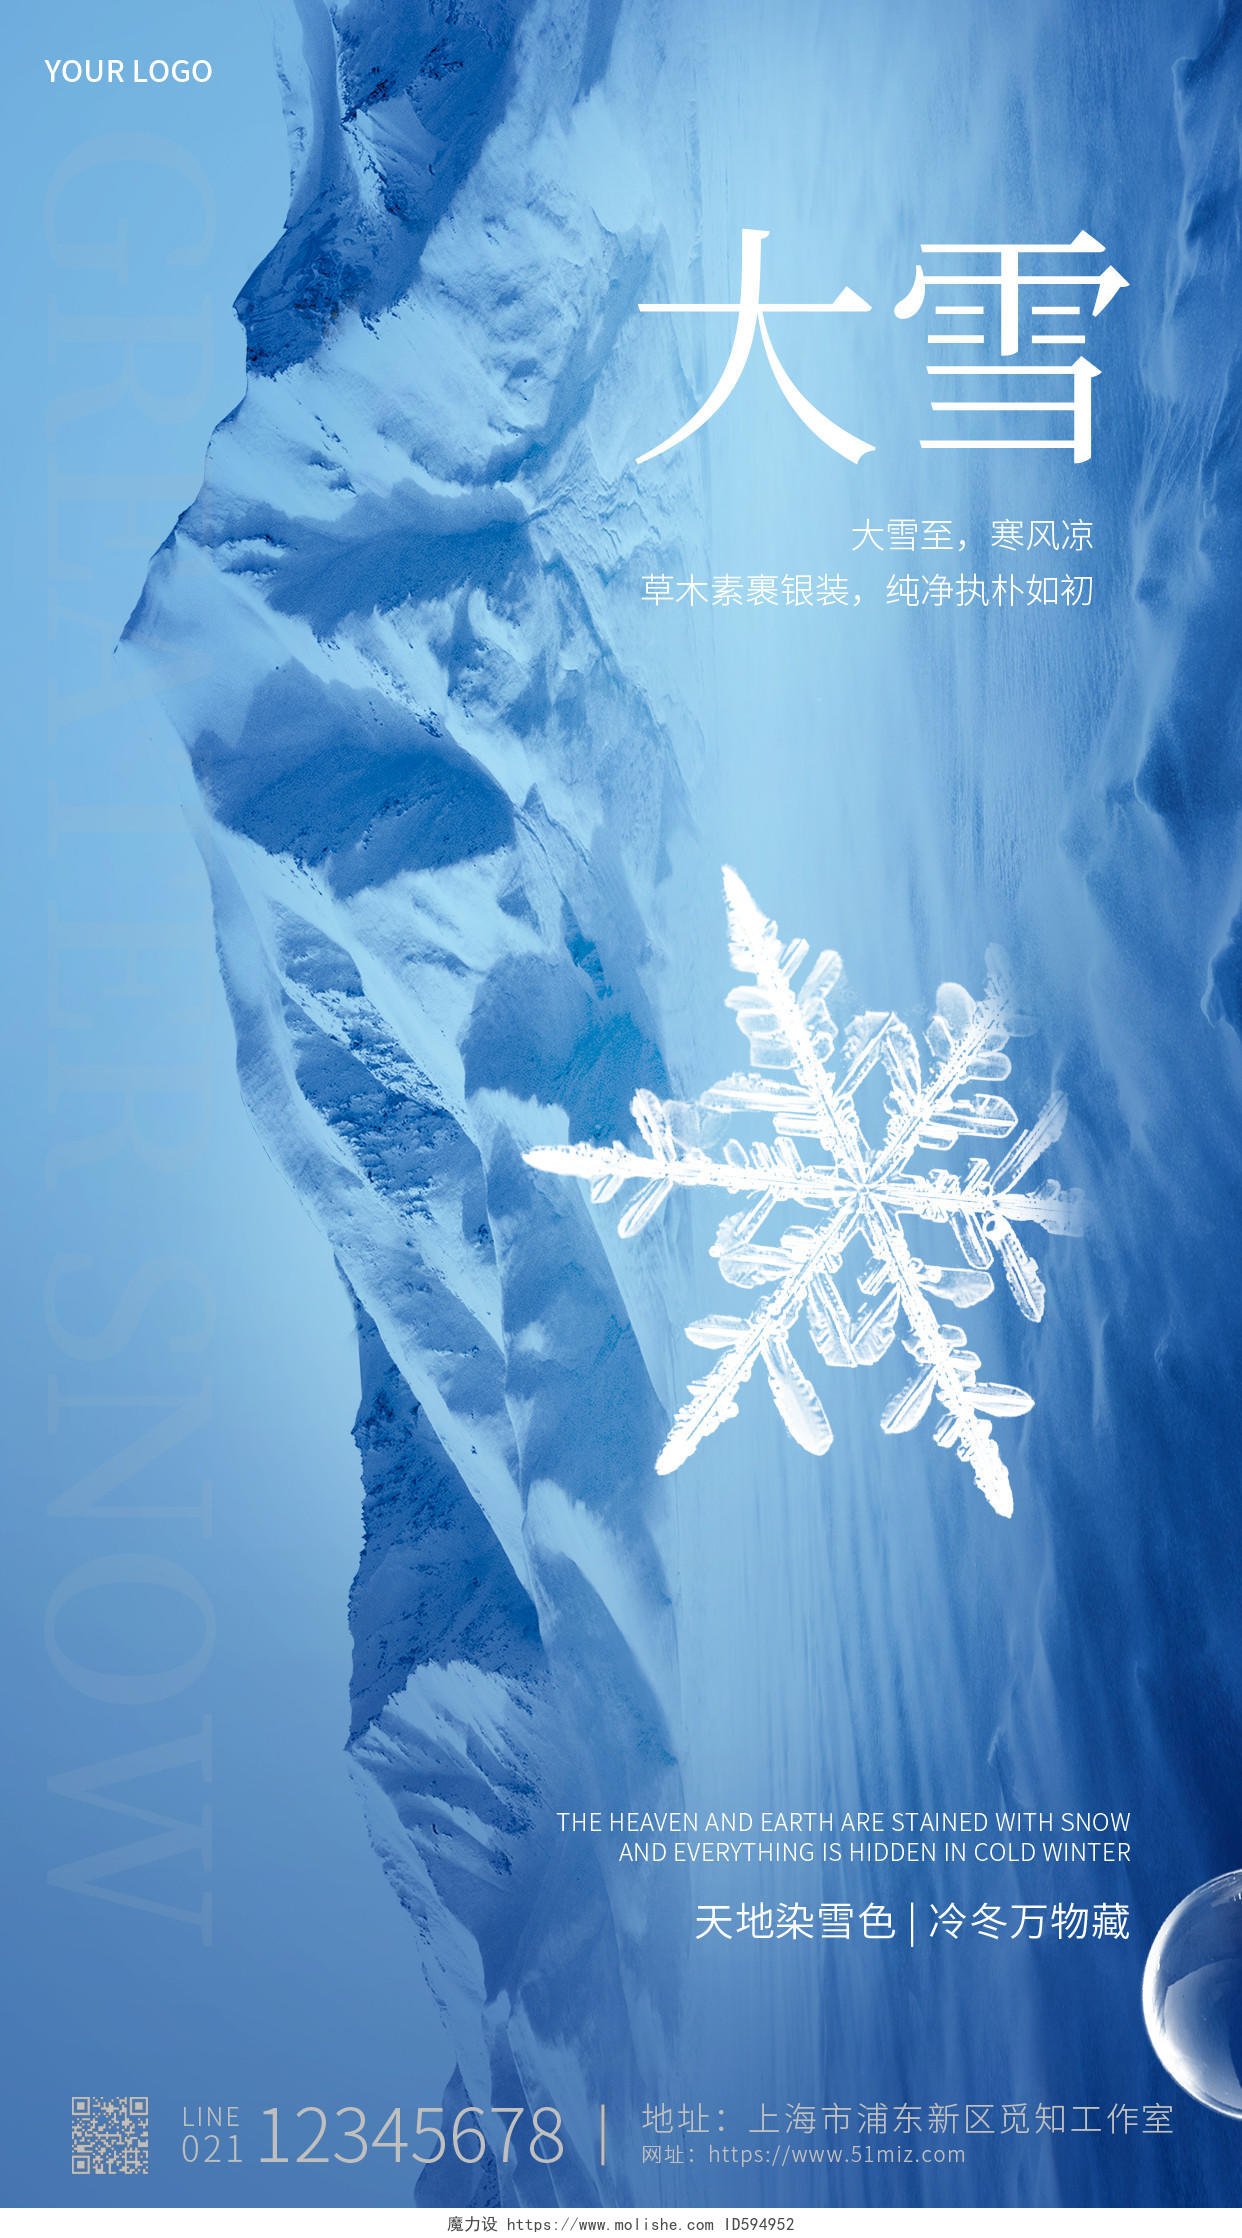 蓝色简约大雪至寒风凉大雪手机宣传海报